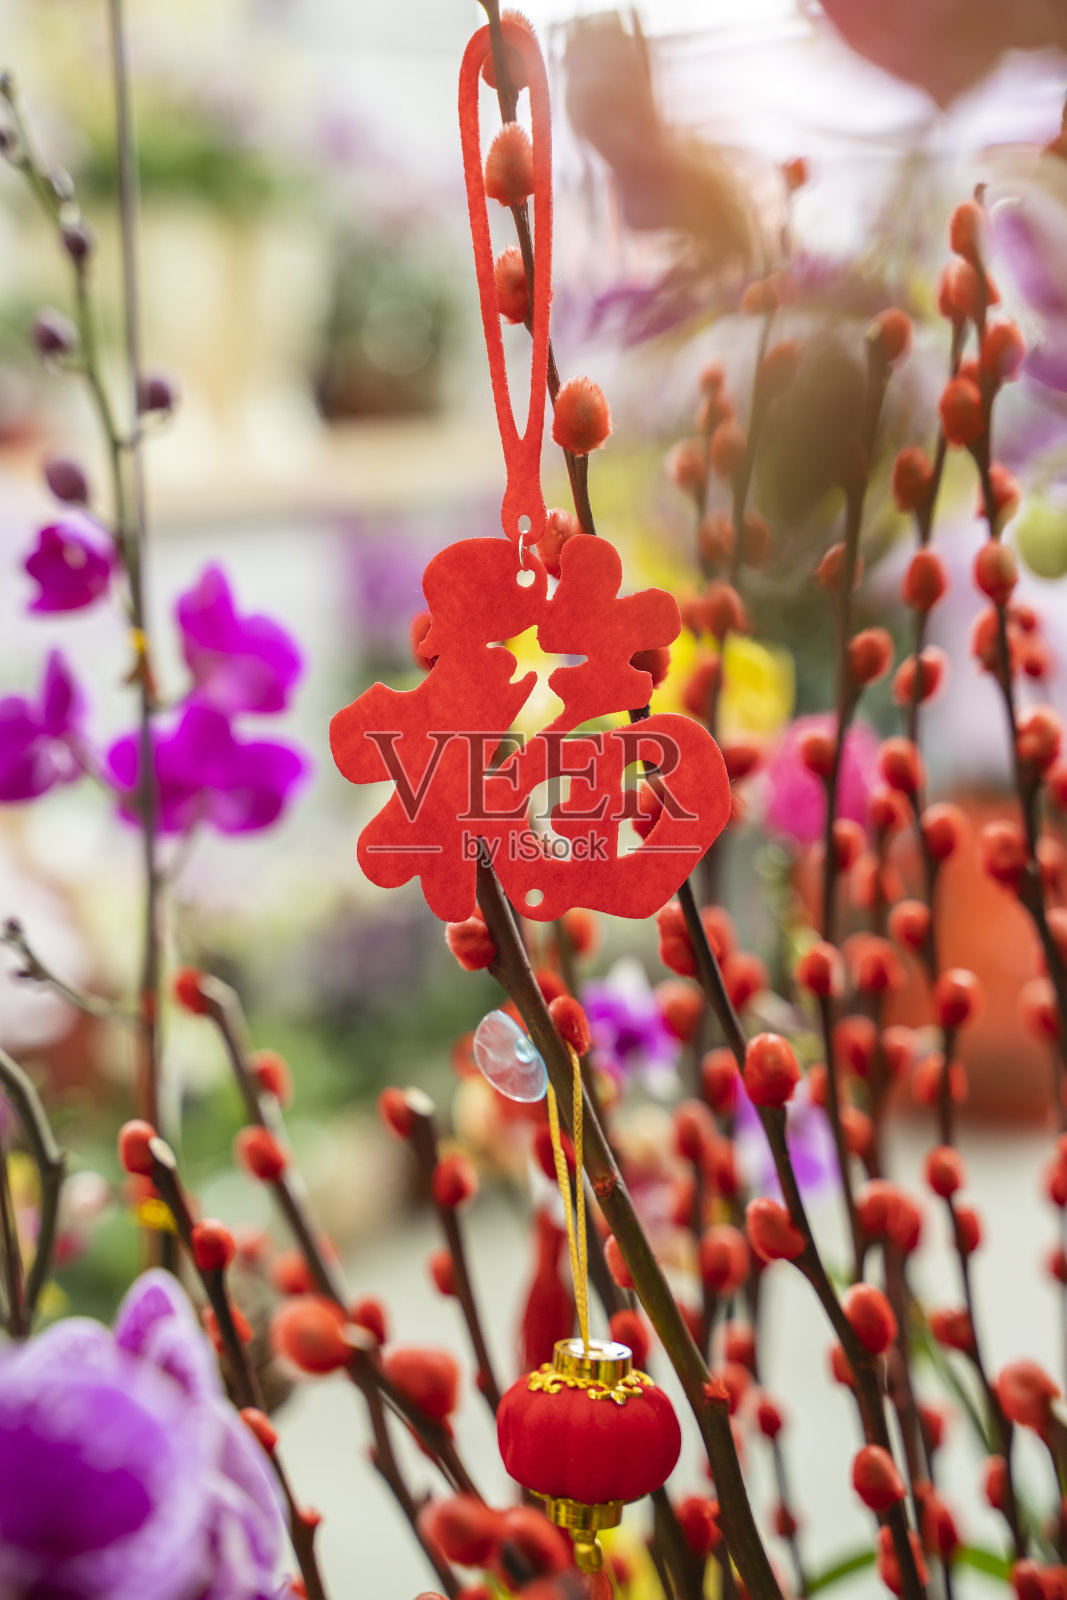 吉祥结悬挂在鲜花上表示新年的问候，汉字意味着新年的美好祝福照片摄影图片